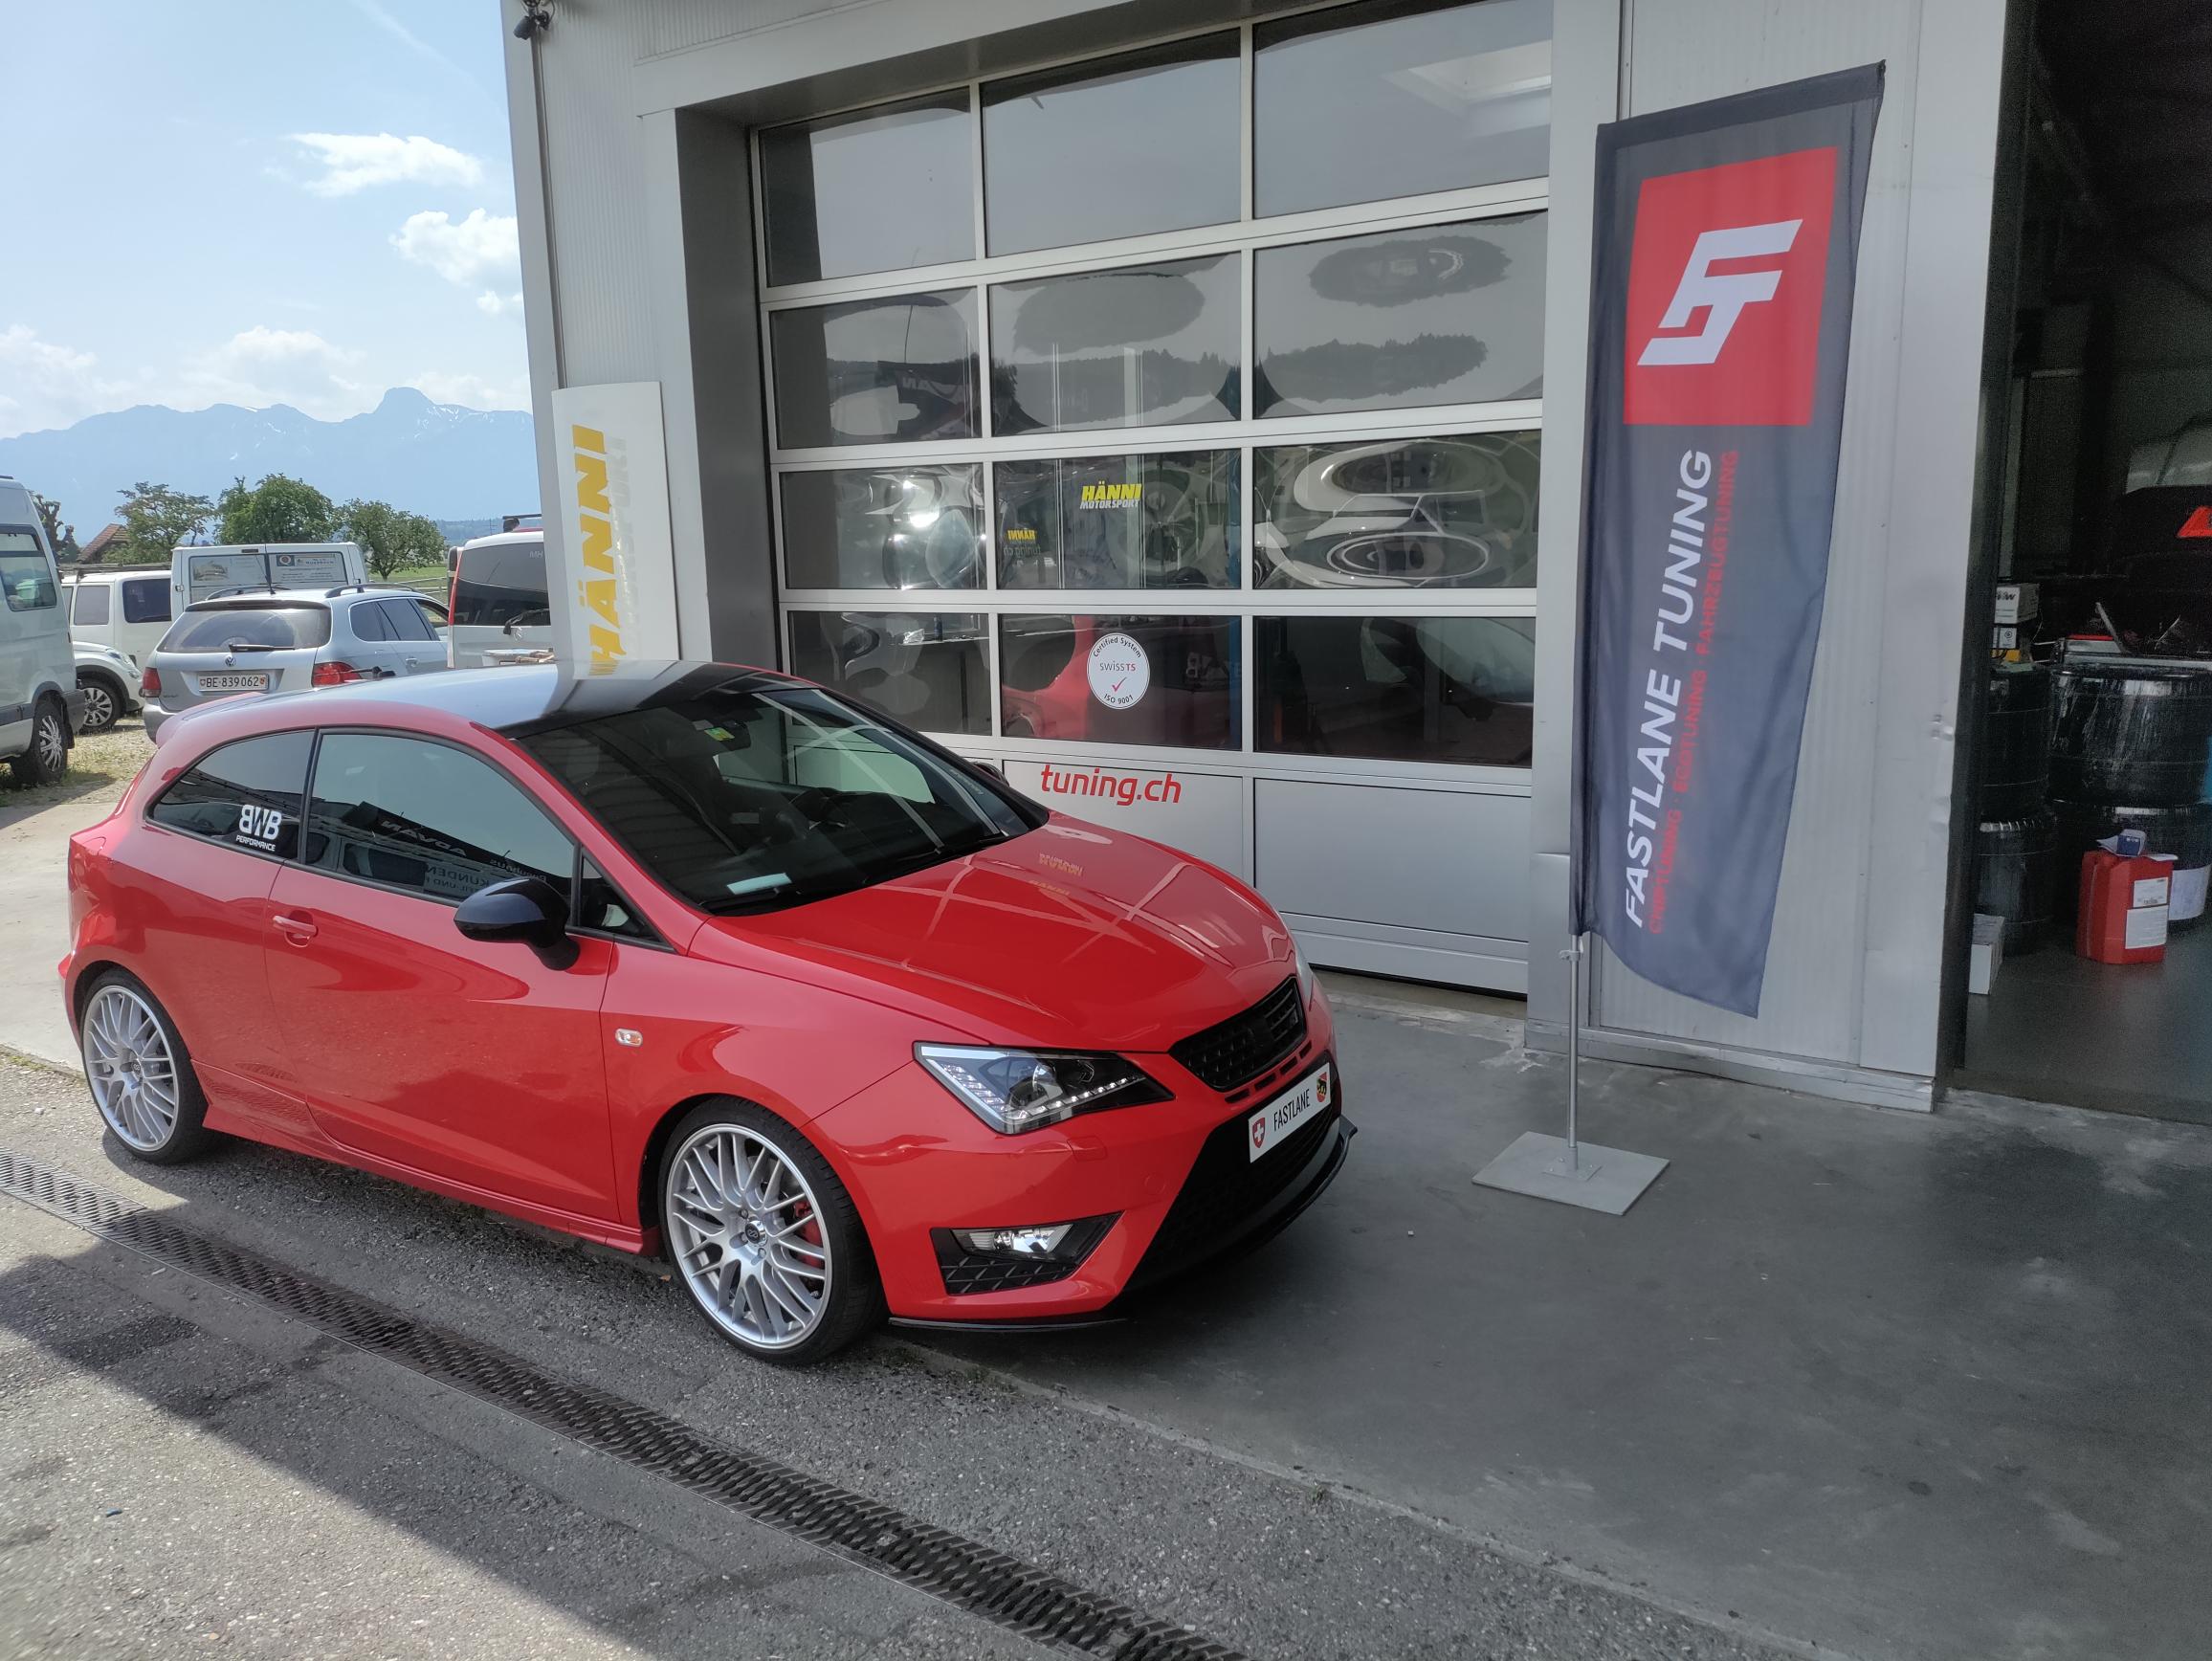 Ein roter SEAT Ibiza 1.4 Liter steht vor der Garage neben der Fastlane Tuning Schweiz Flagge